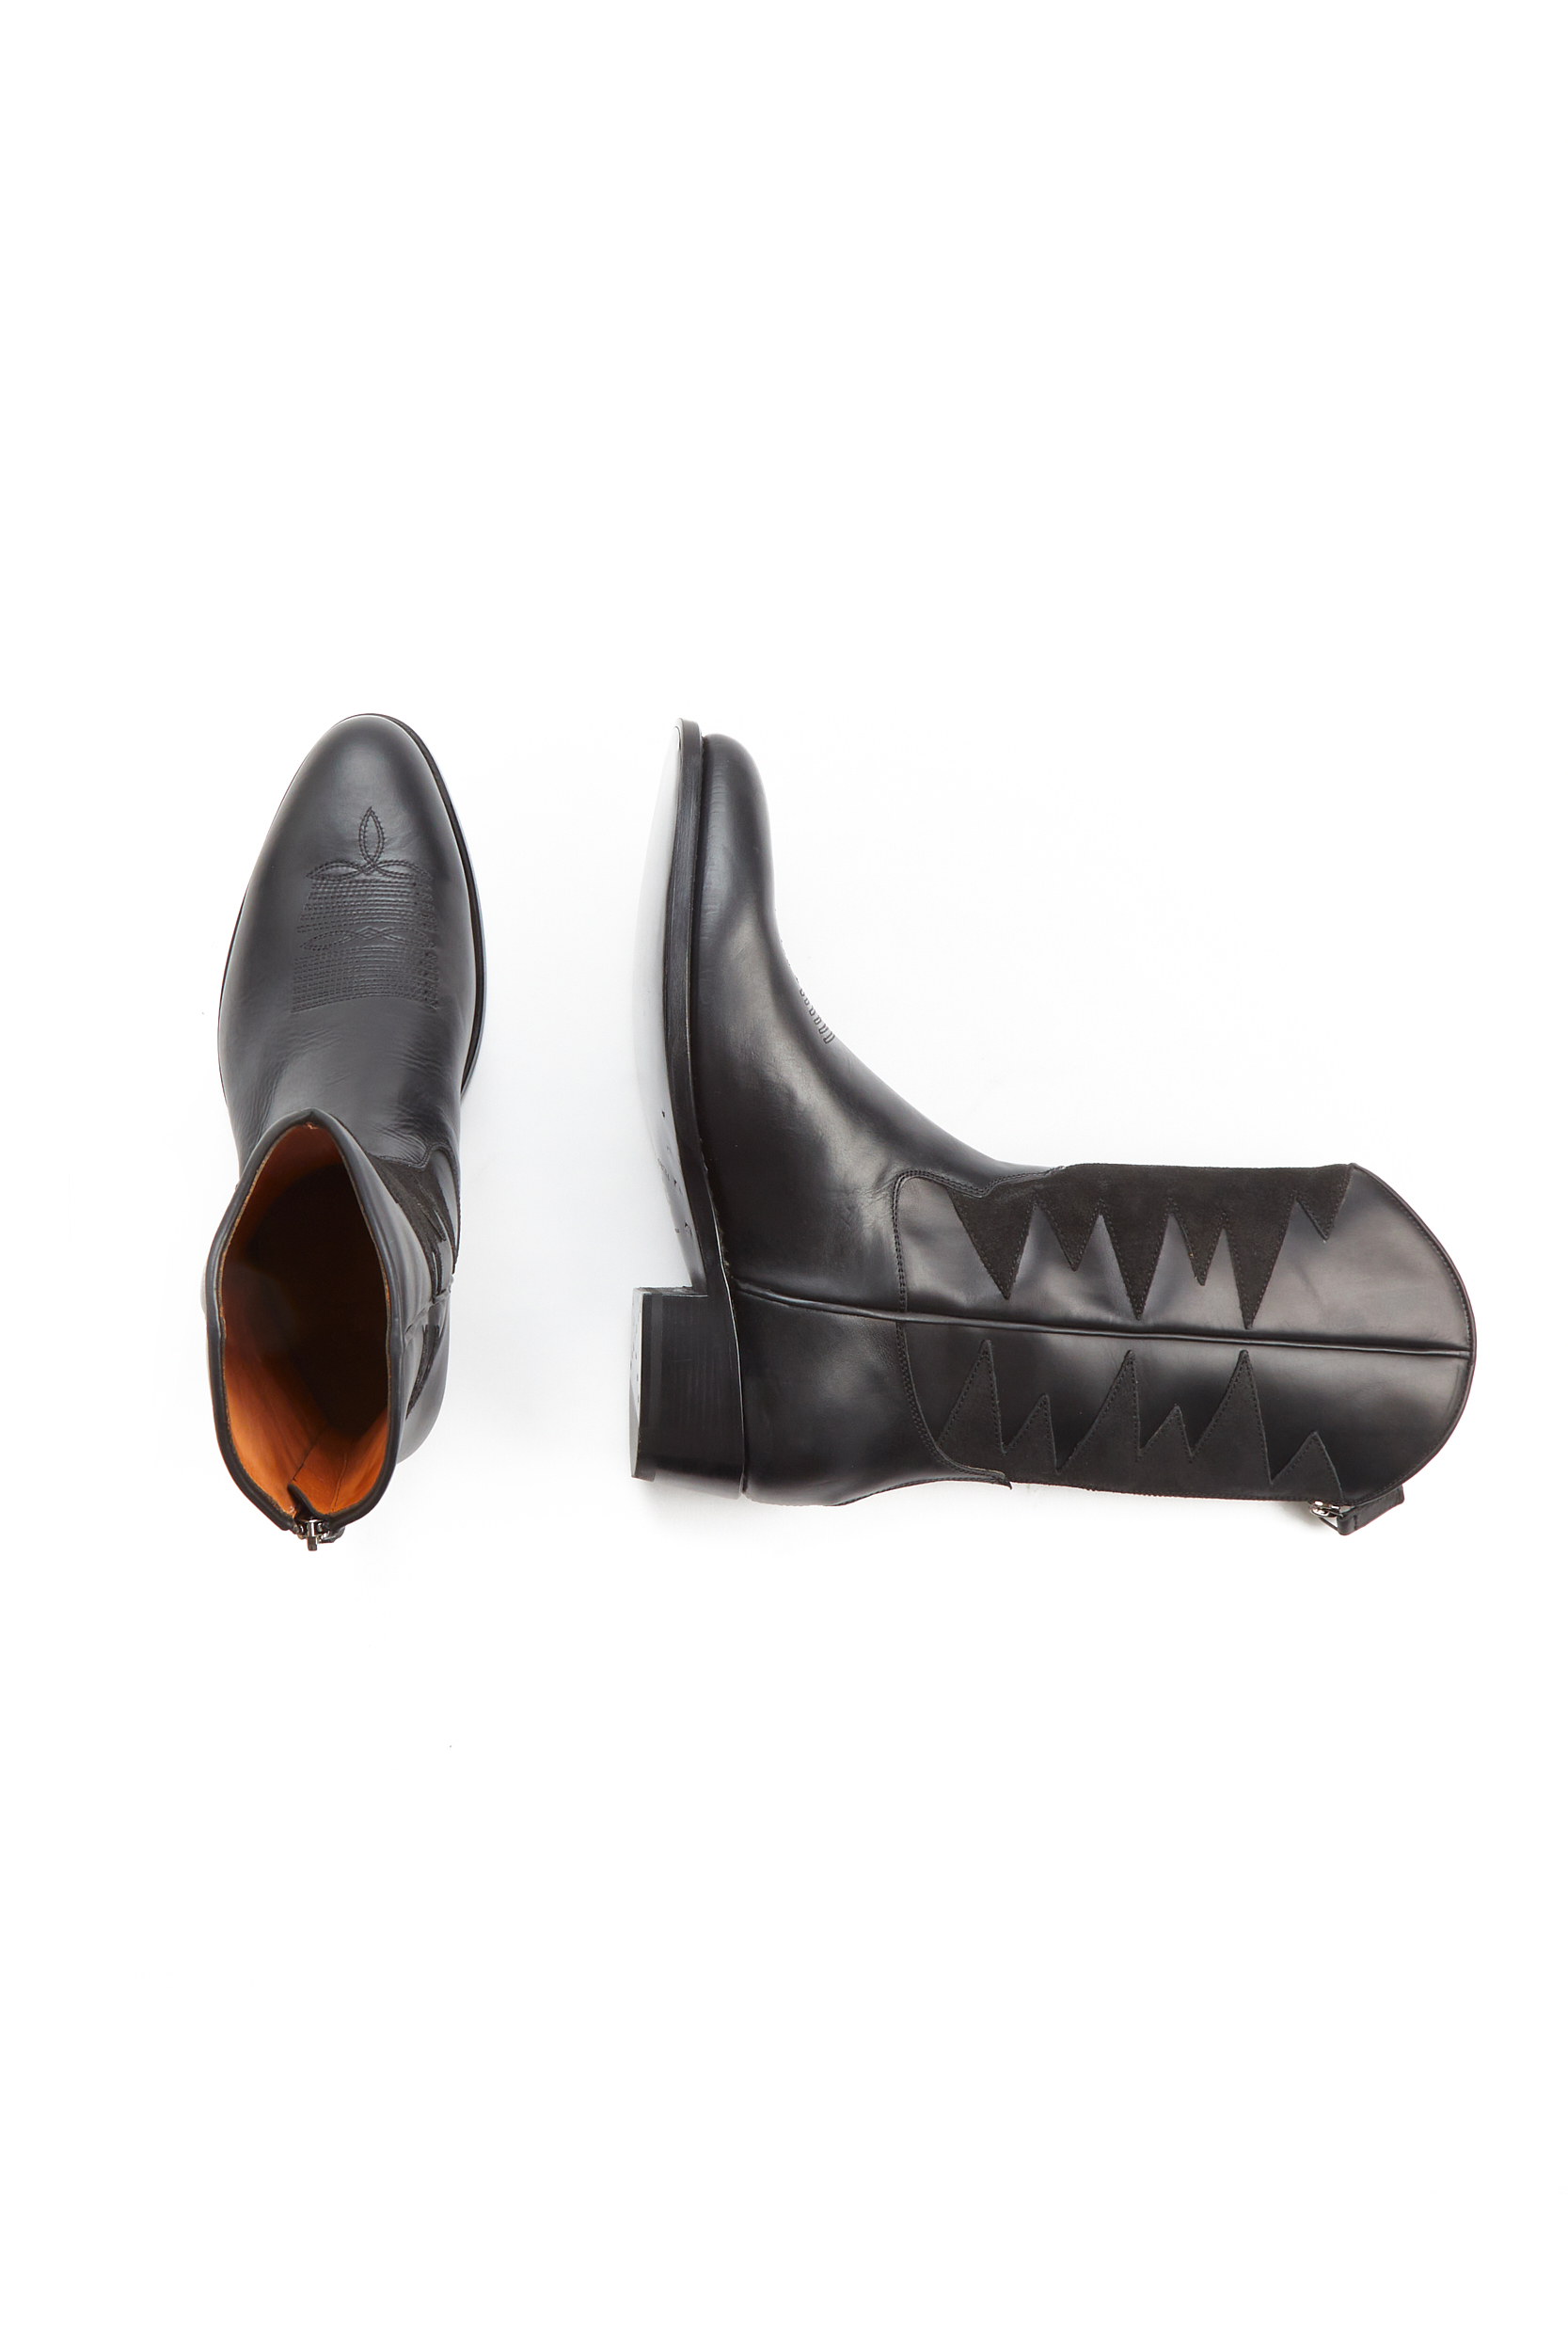 Cormac Black Calf Boots - 